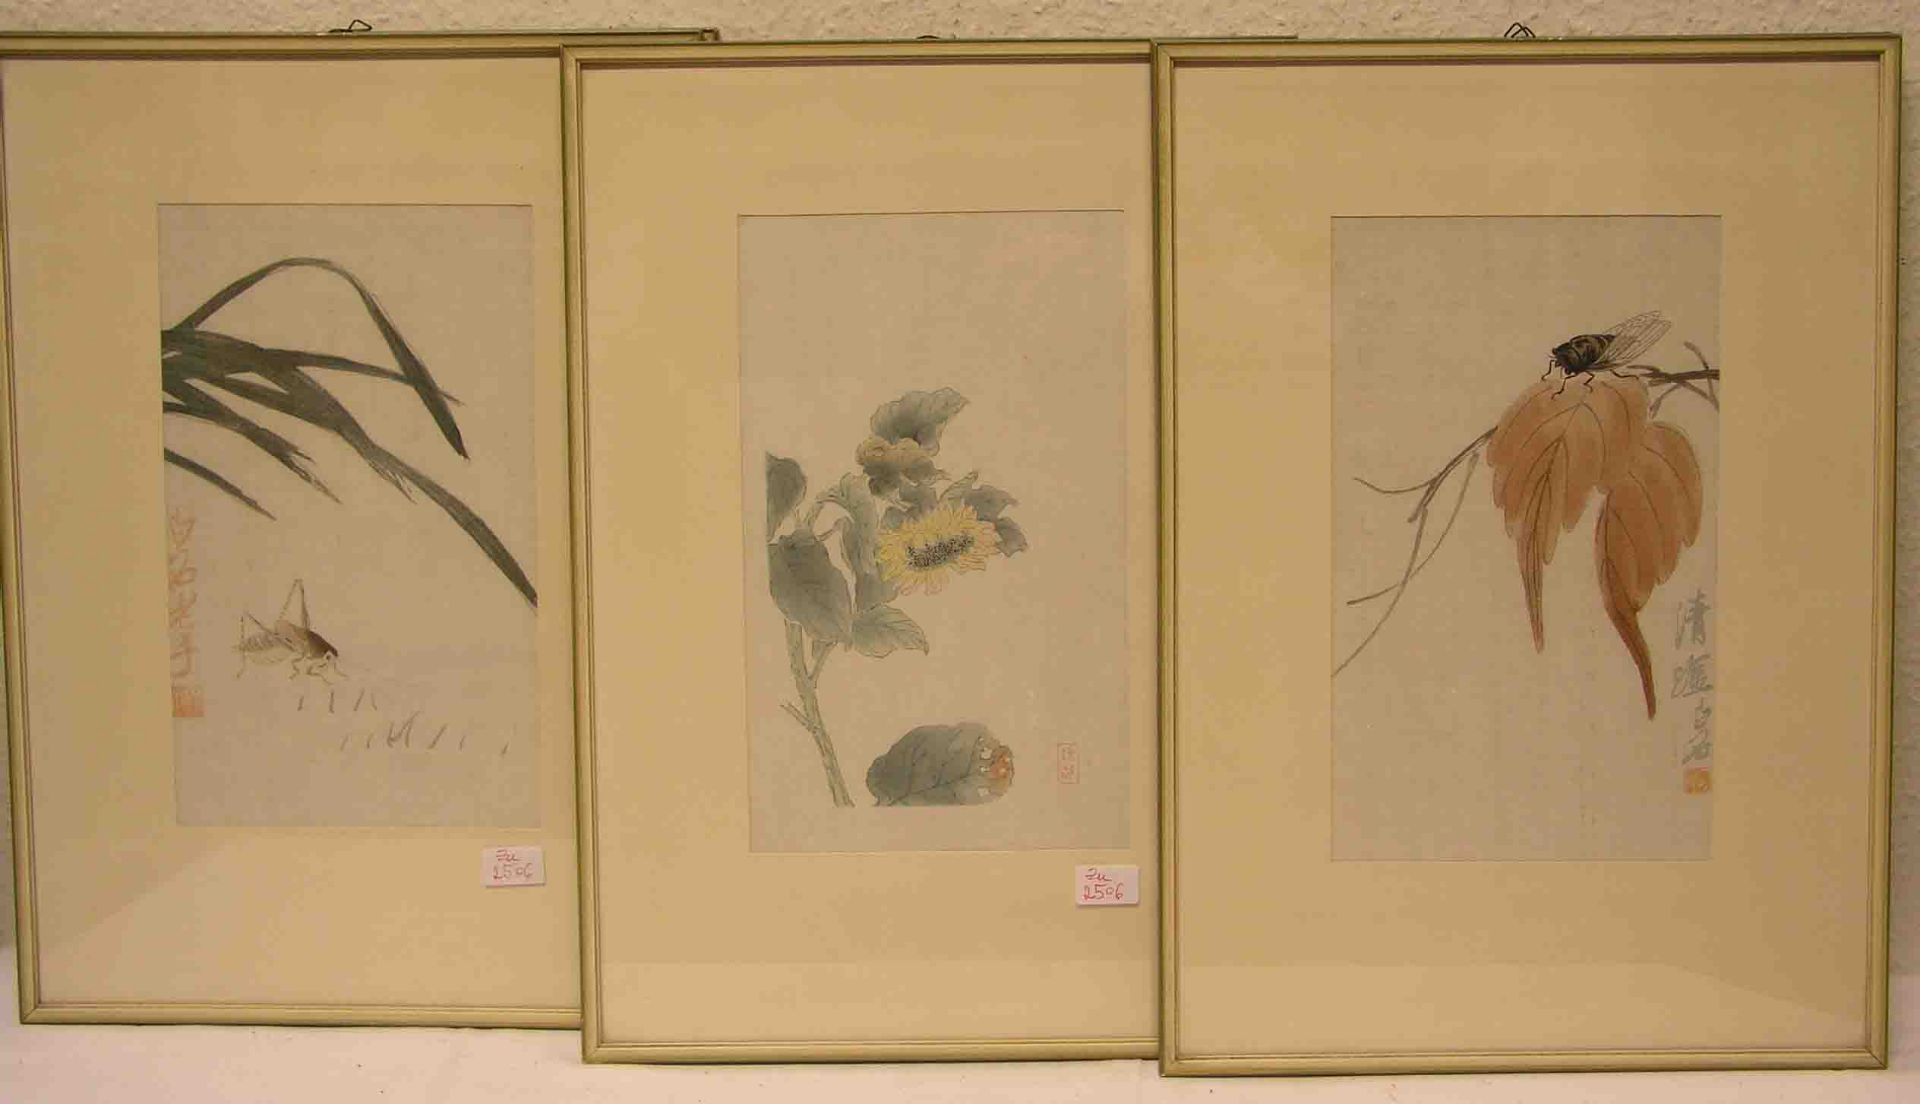 Fünf Blatt japanische Farbholzschnitte: "Insekten-, Vogel-, Pflanzenmotive". 29 x 17cm,